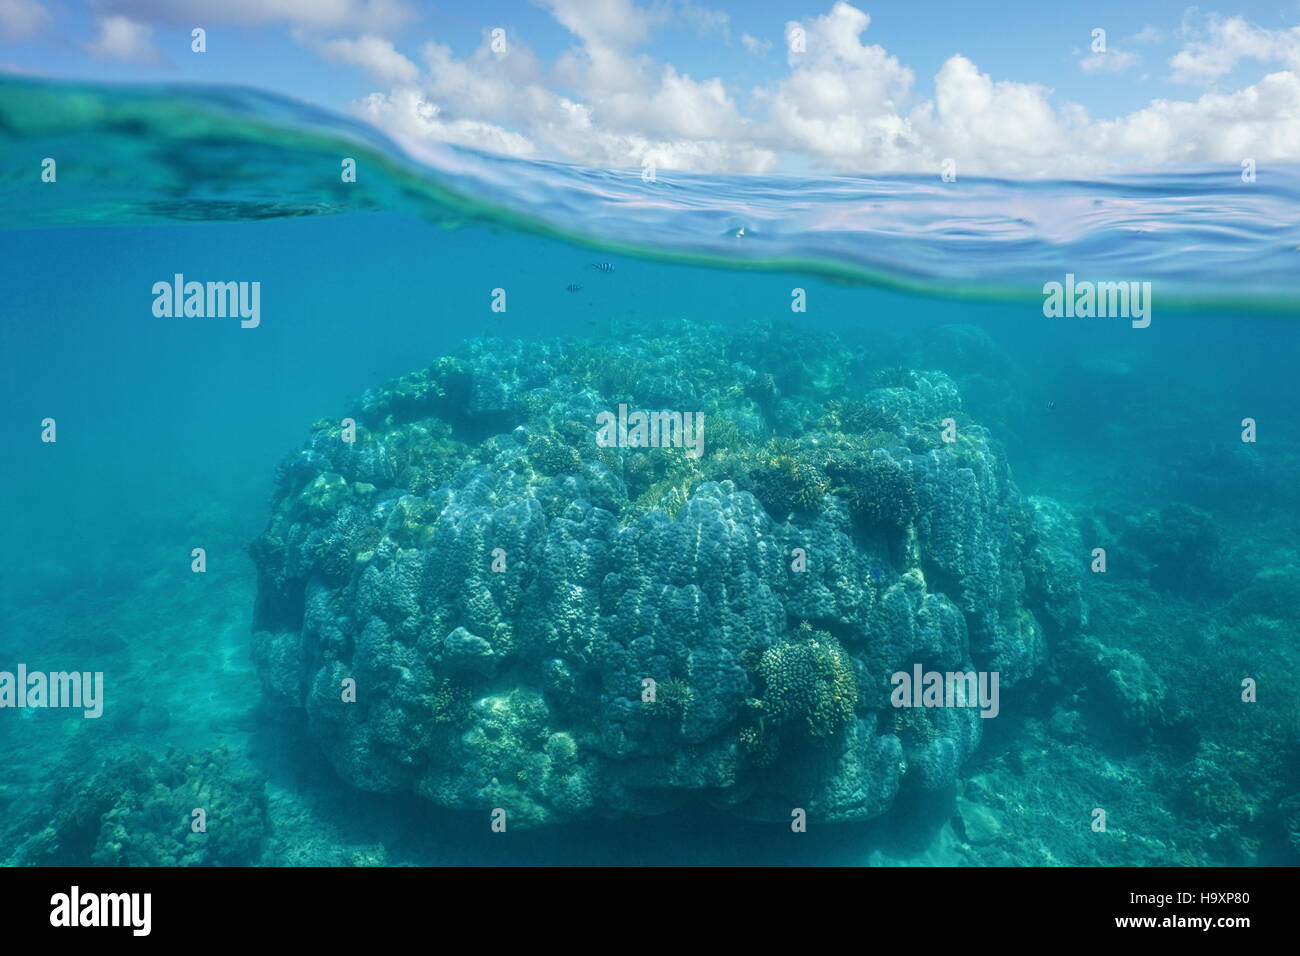 Al di sopra e al di sotto dell'acqua, la massiccia stony coral sott'acqua e cielo blu con nuvole diviso dalla linea di galleggiamento, Nuova Caledonia, oceano pacifico Foto Stock